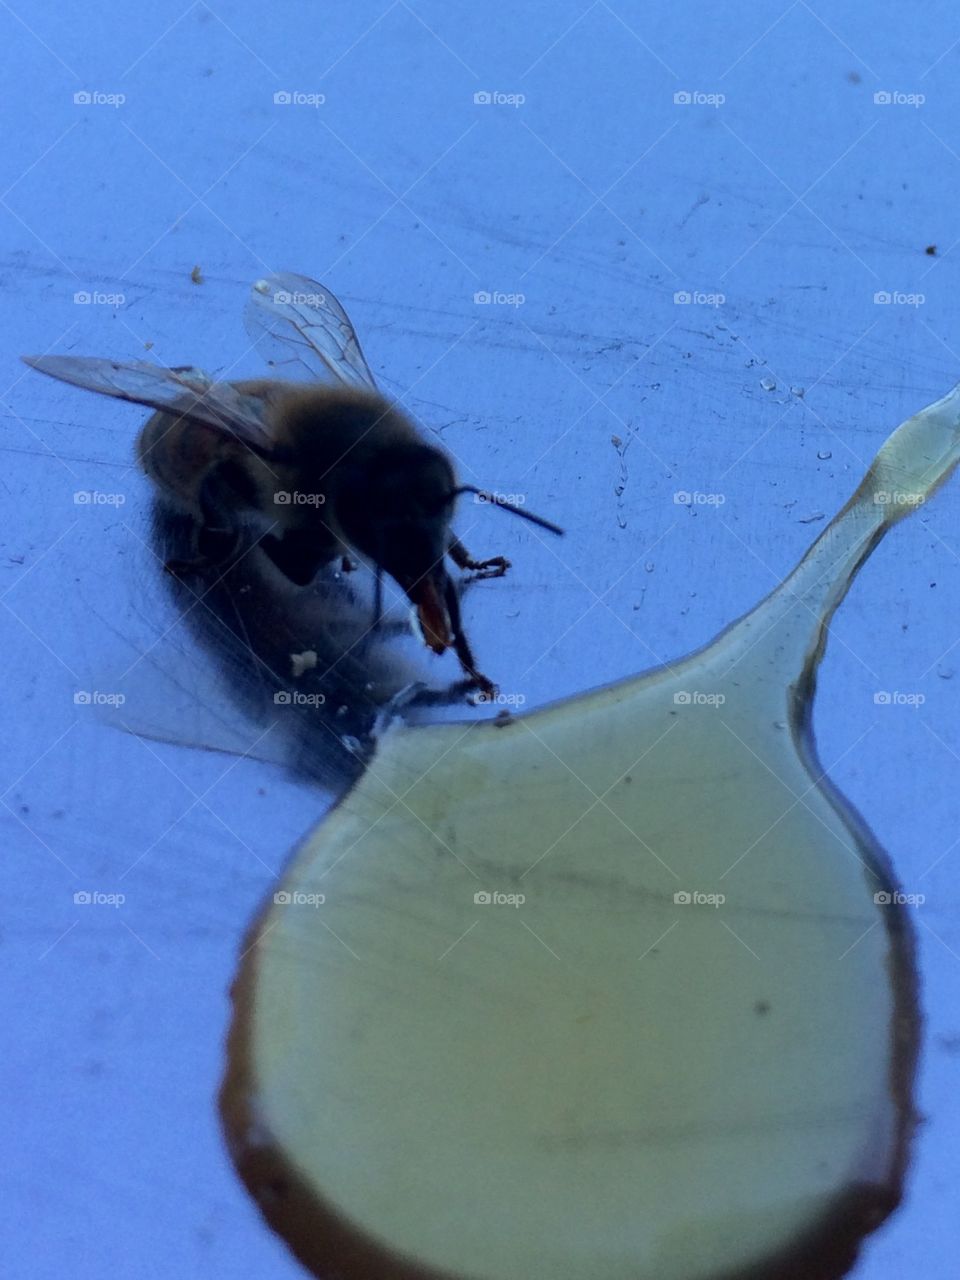 Honeybee at work. 